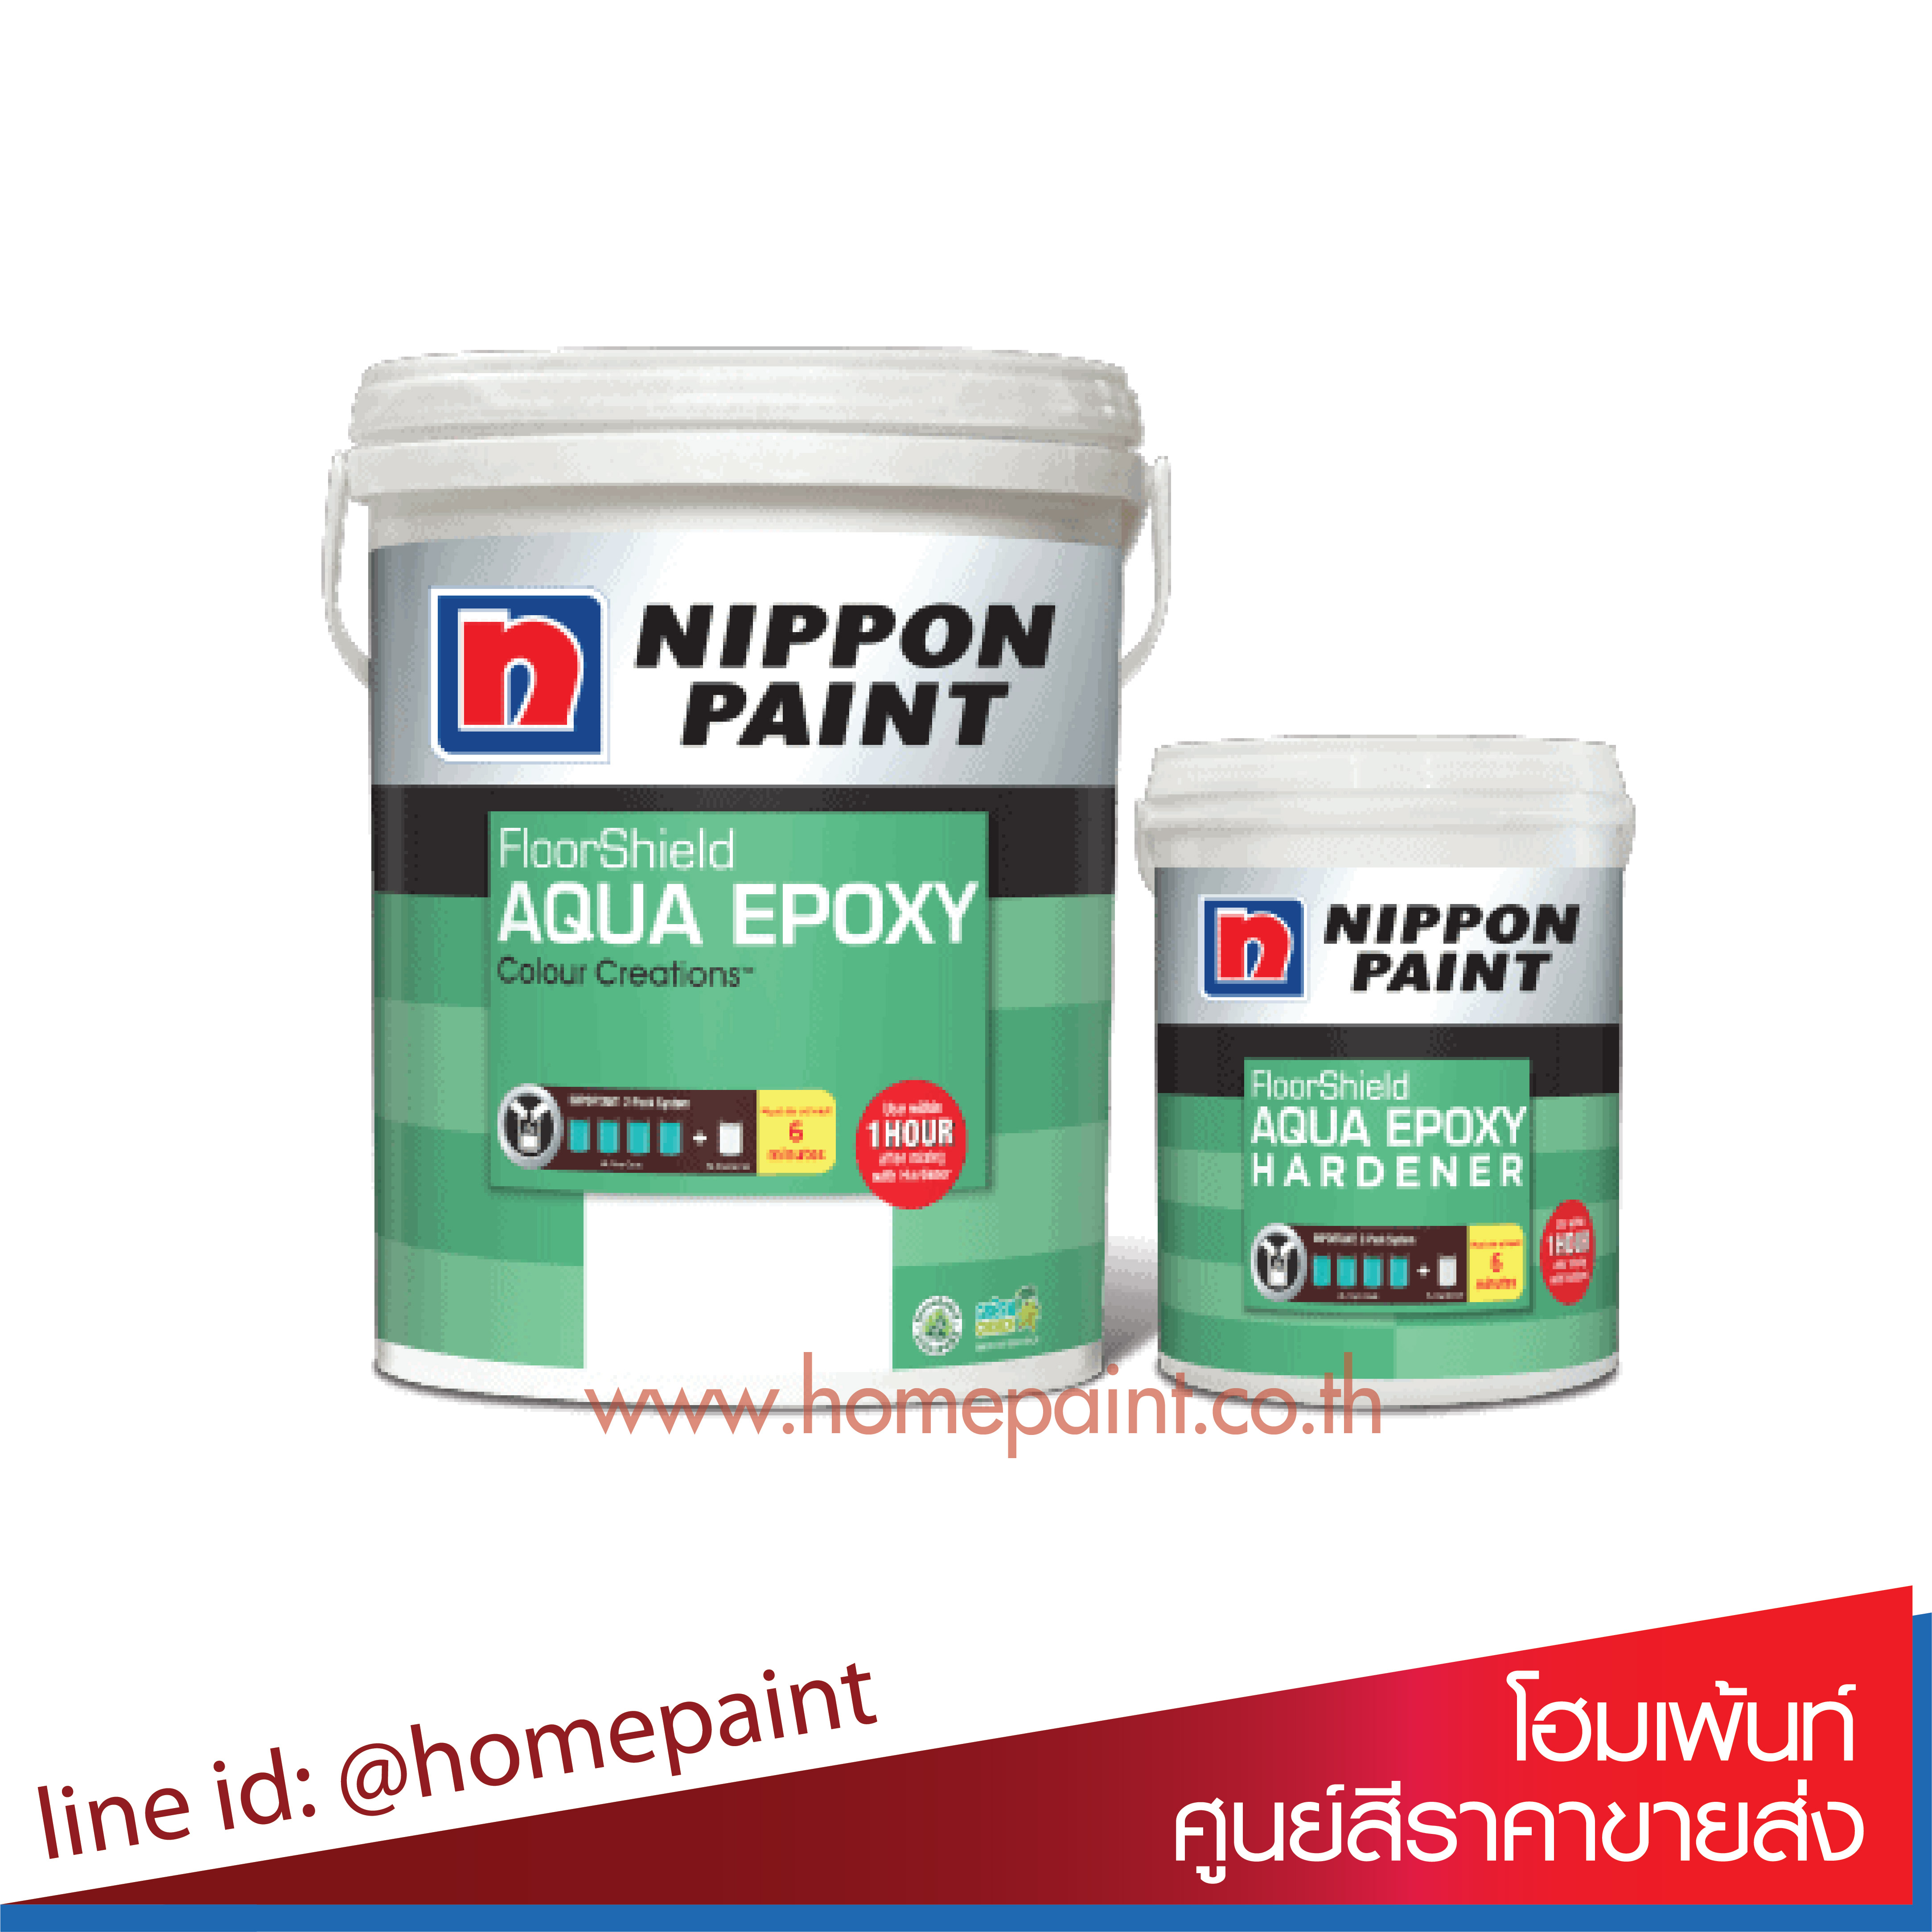 นิปปอนเพนต์ อะควา อีพ็อกซี่ สูตรน้ำ 2ส่วนผสม / Nippon paint Aqua Epoxy A+B